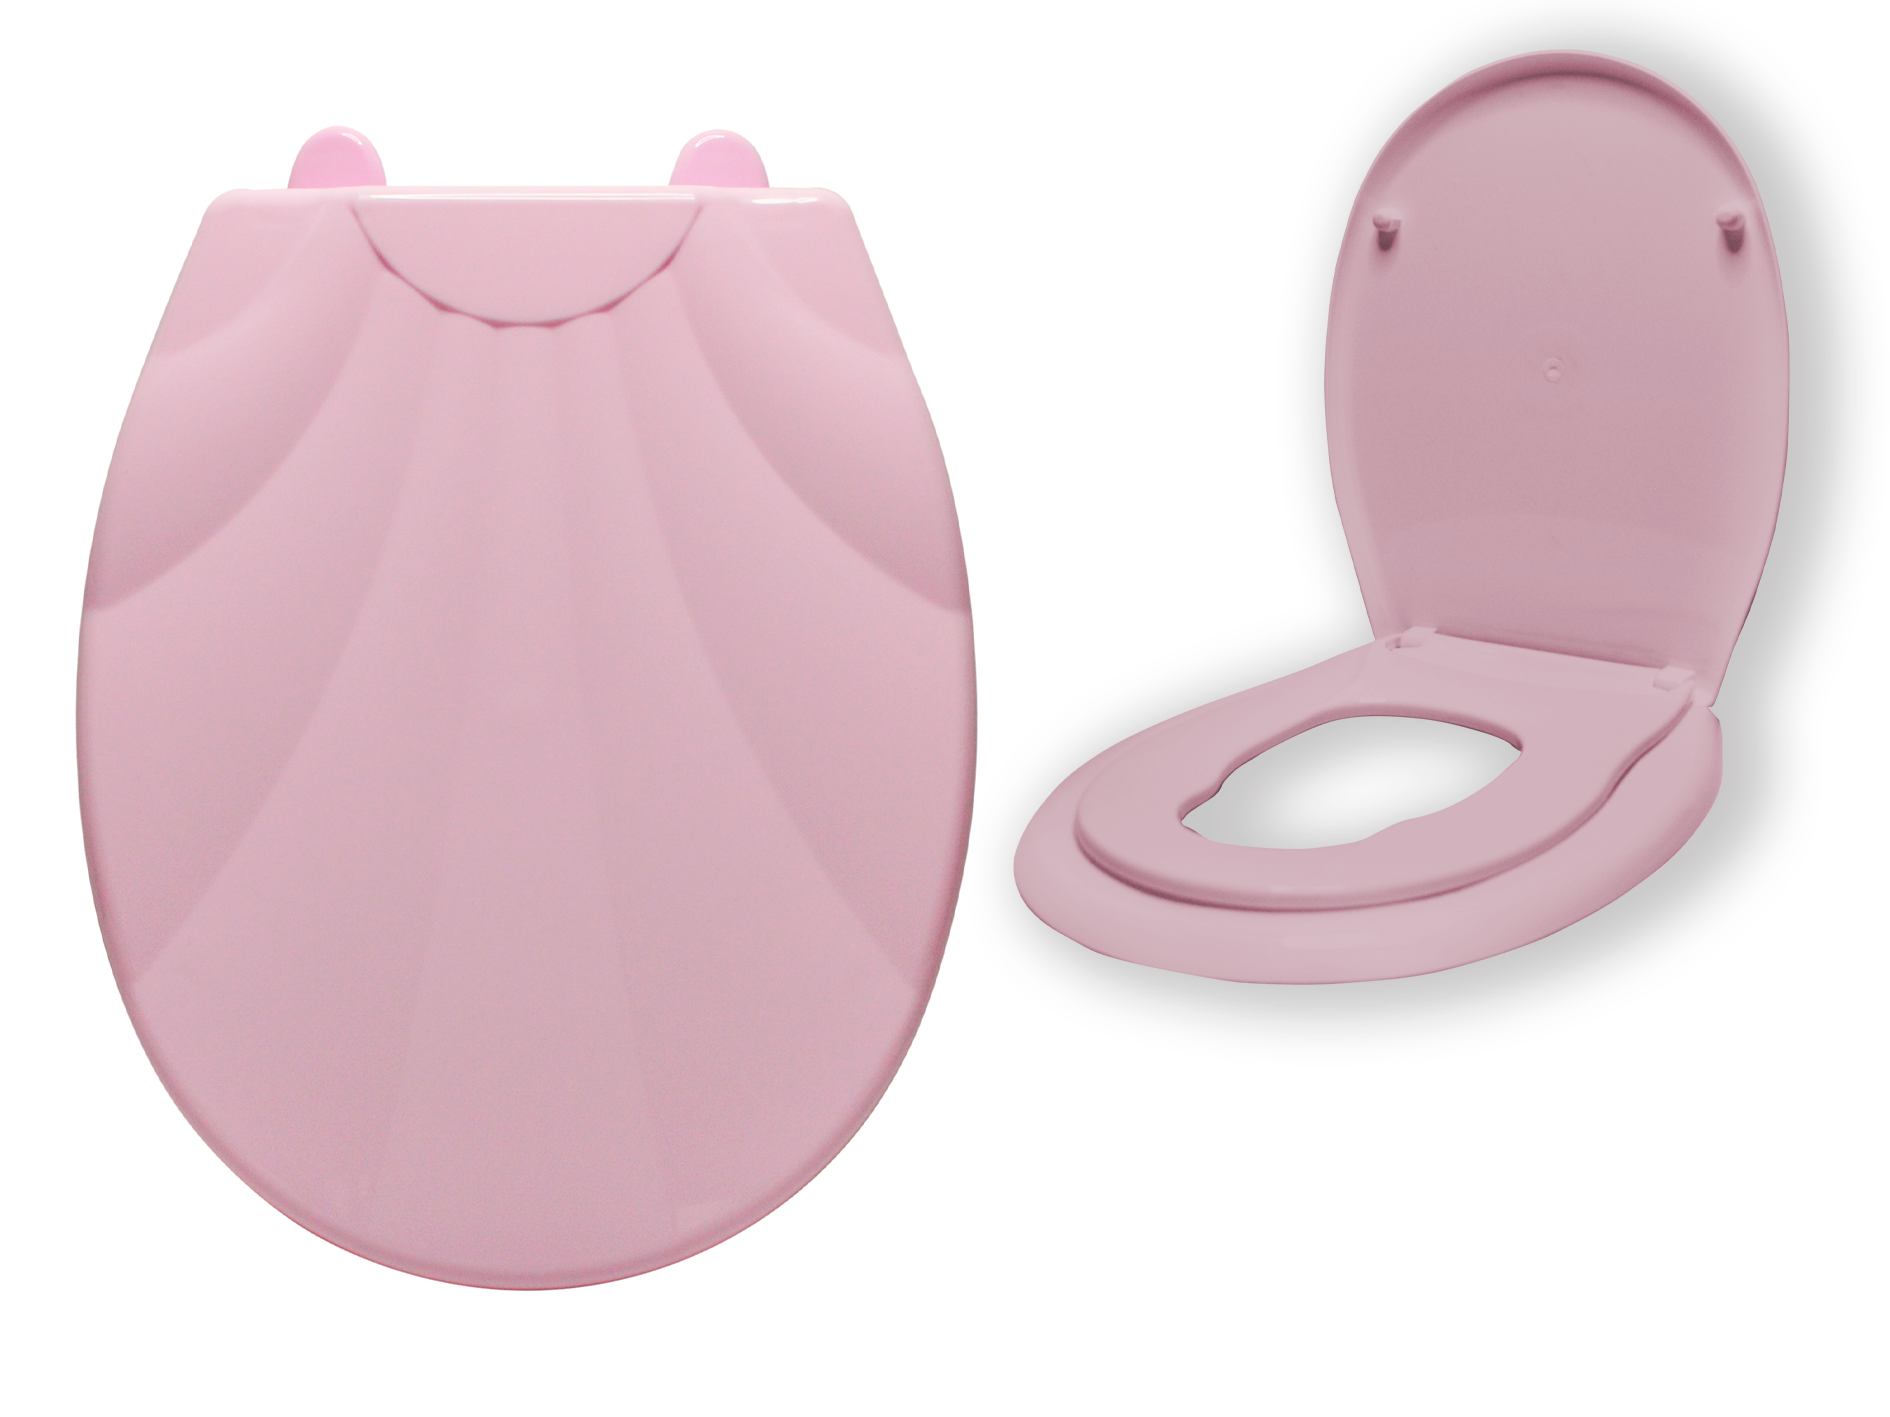 Сиденье для унитаза ATLANFA с детским вкладышем LUX Ракушка, розовый ложечка для пакетов с детским питанием с контейнером